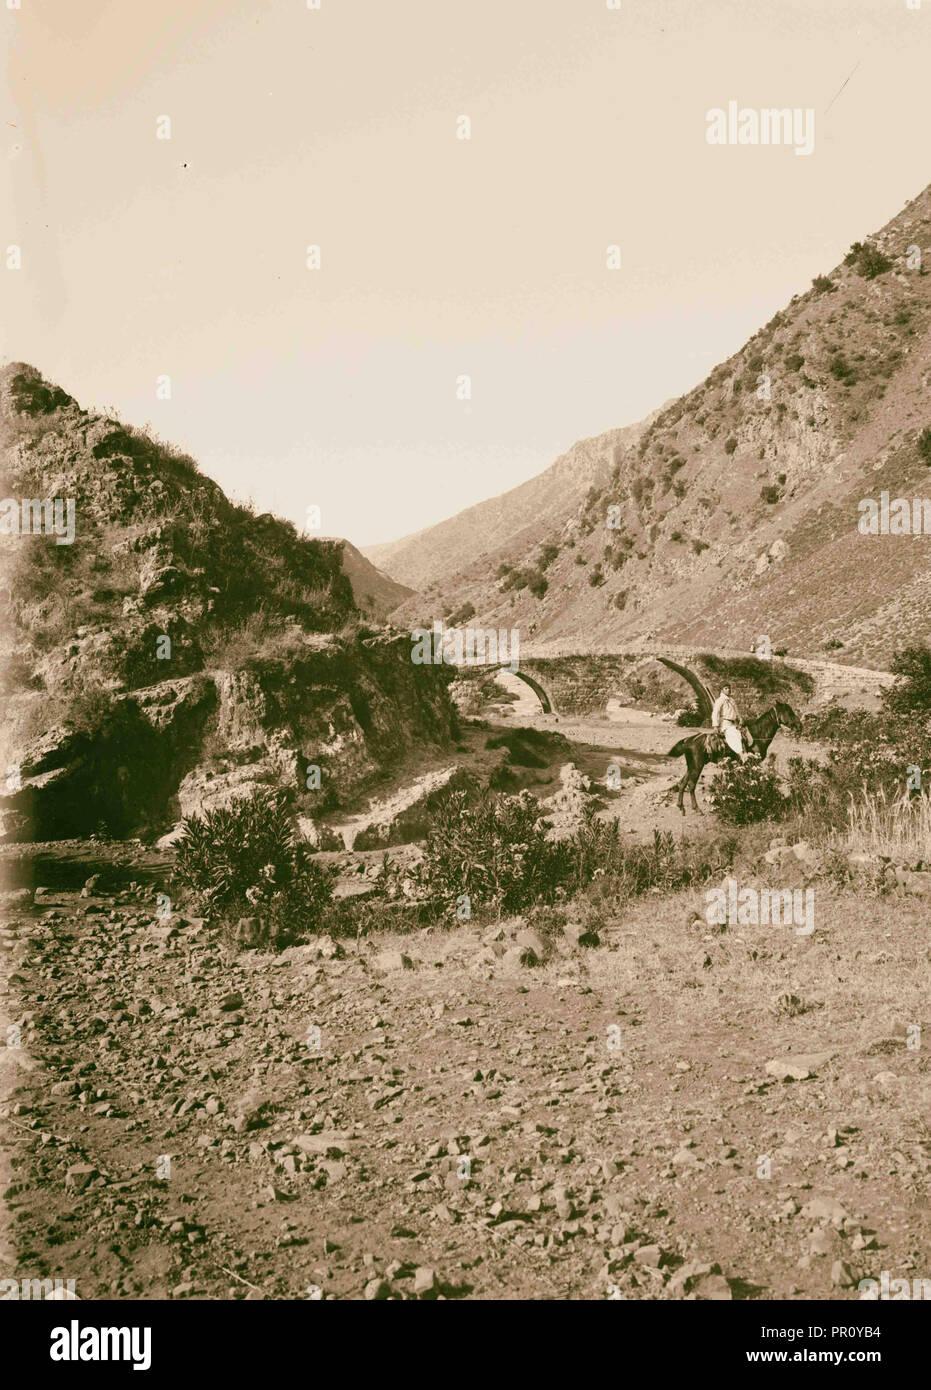 Vues du nord. Pont romain sur le Leontes (litanie). 1900, au Liban Banque D'Images